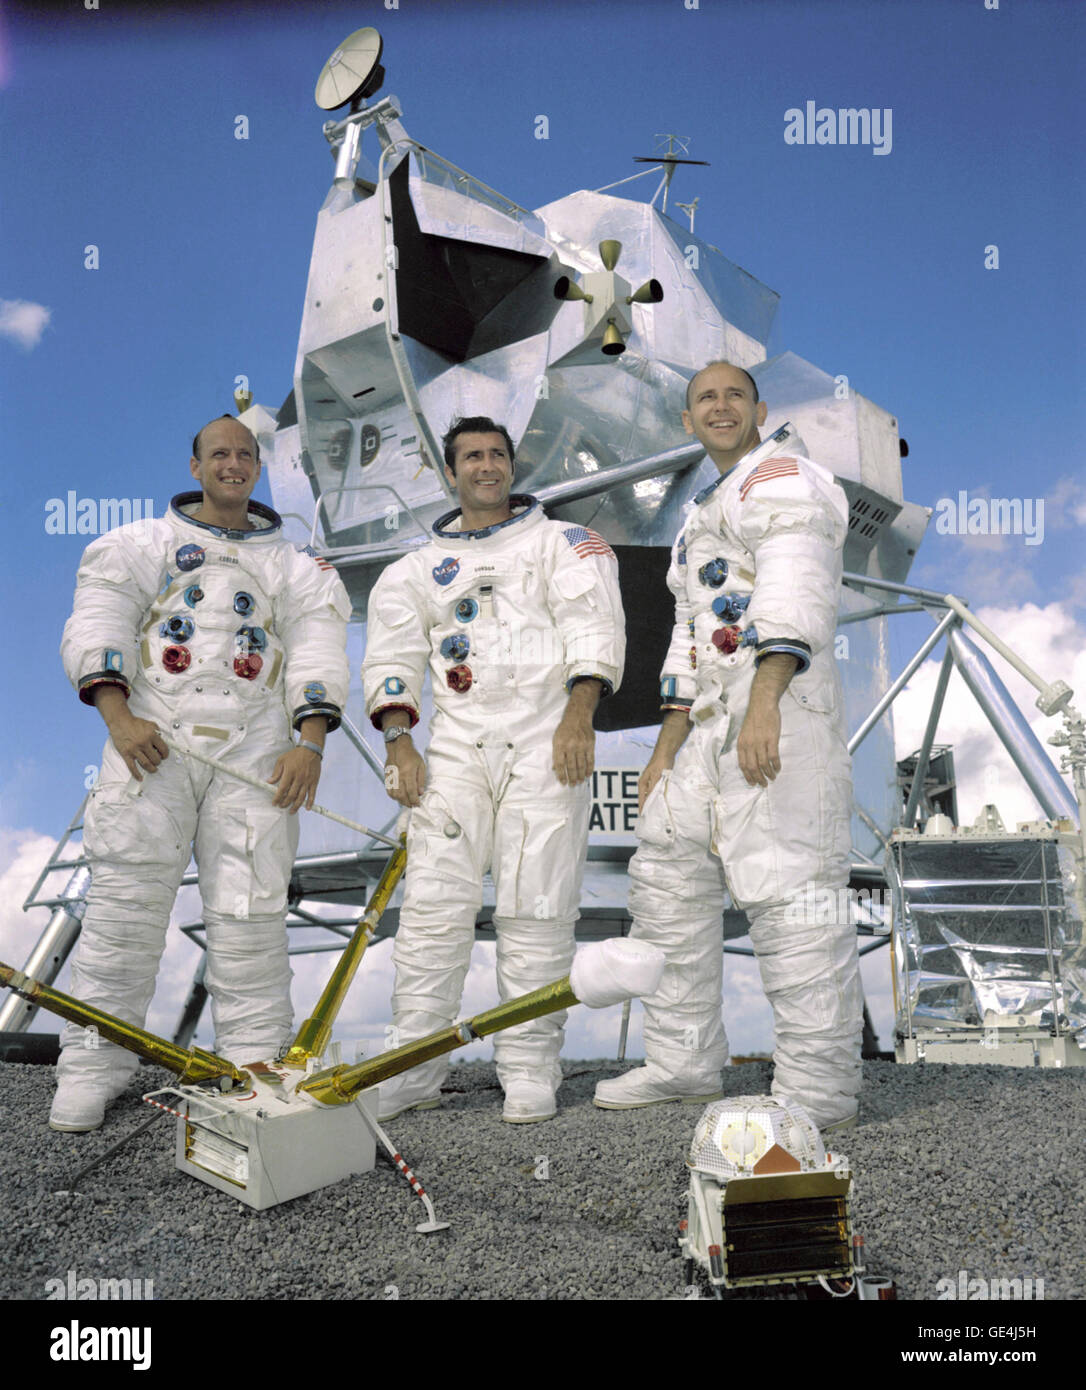 (22 settembre 1969) il ritratto del primo equipaggio dell'Apollo 12 atterraggio lunare di missione. Da sinistra a destra essi sono: Comandante Charles "Pete" Conrad Jr., il pilota del modulo di comando, Richard F. Gordon Jr e modulo lunare pilota, Alan L.Bean. L'Apollo 12 missione era il secondo atterraggio lunare di missione in cui la terza e la quarta astronauti americani mettere piede sulla Luna. Questa missione è stata evidenziata mediante il modulo lunare soprannominato "Intrepid" lo sbarco nel giro di poche centinaia di metri di un geometra sonda che è stata inviata per la luna nel mese di aprile del 1967 su una missione di mappatura come un precursore a lan Foto Stock